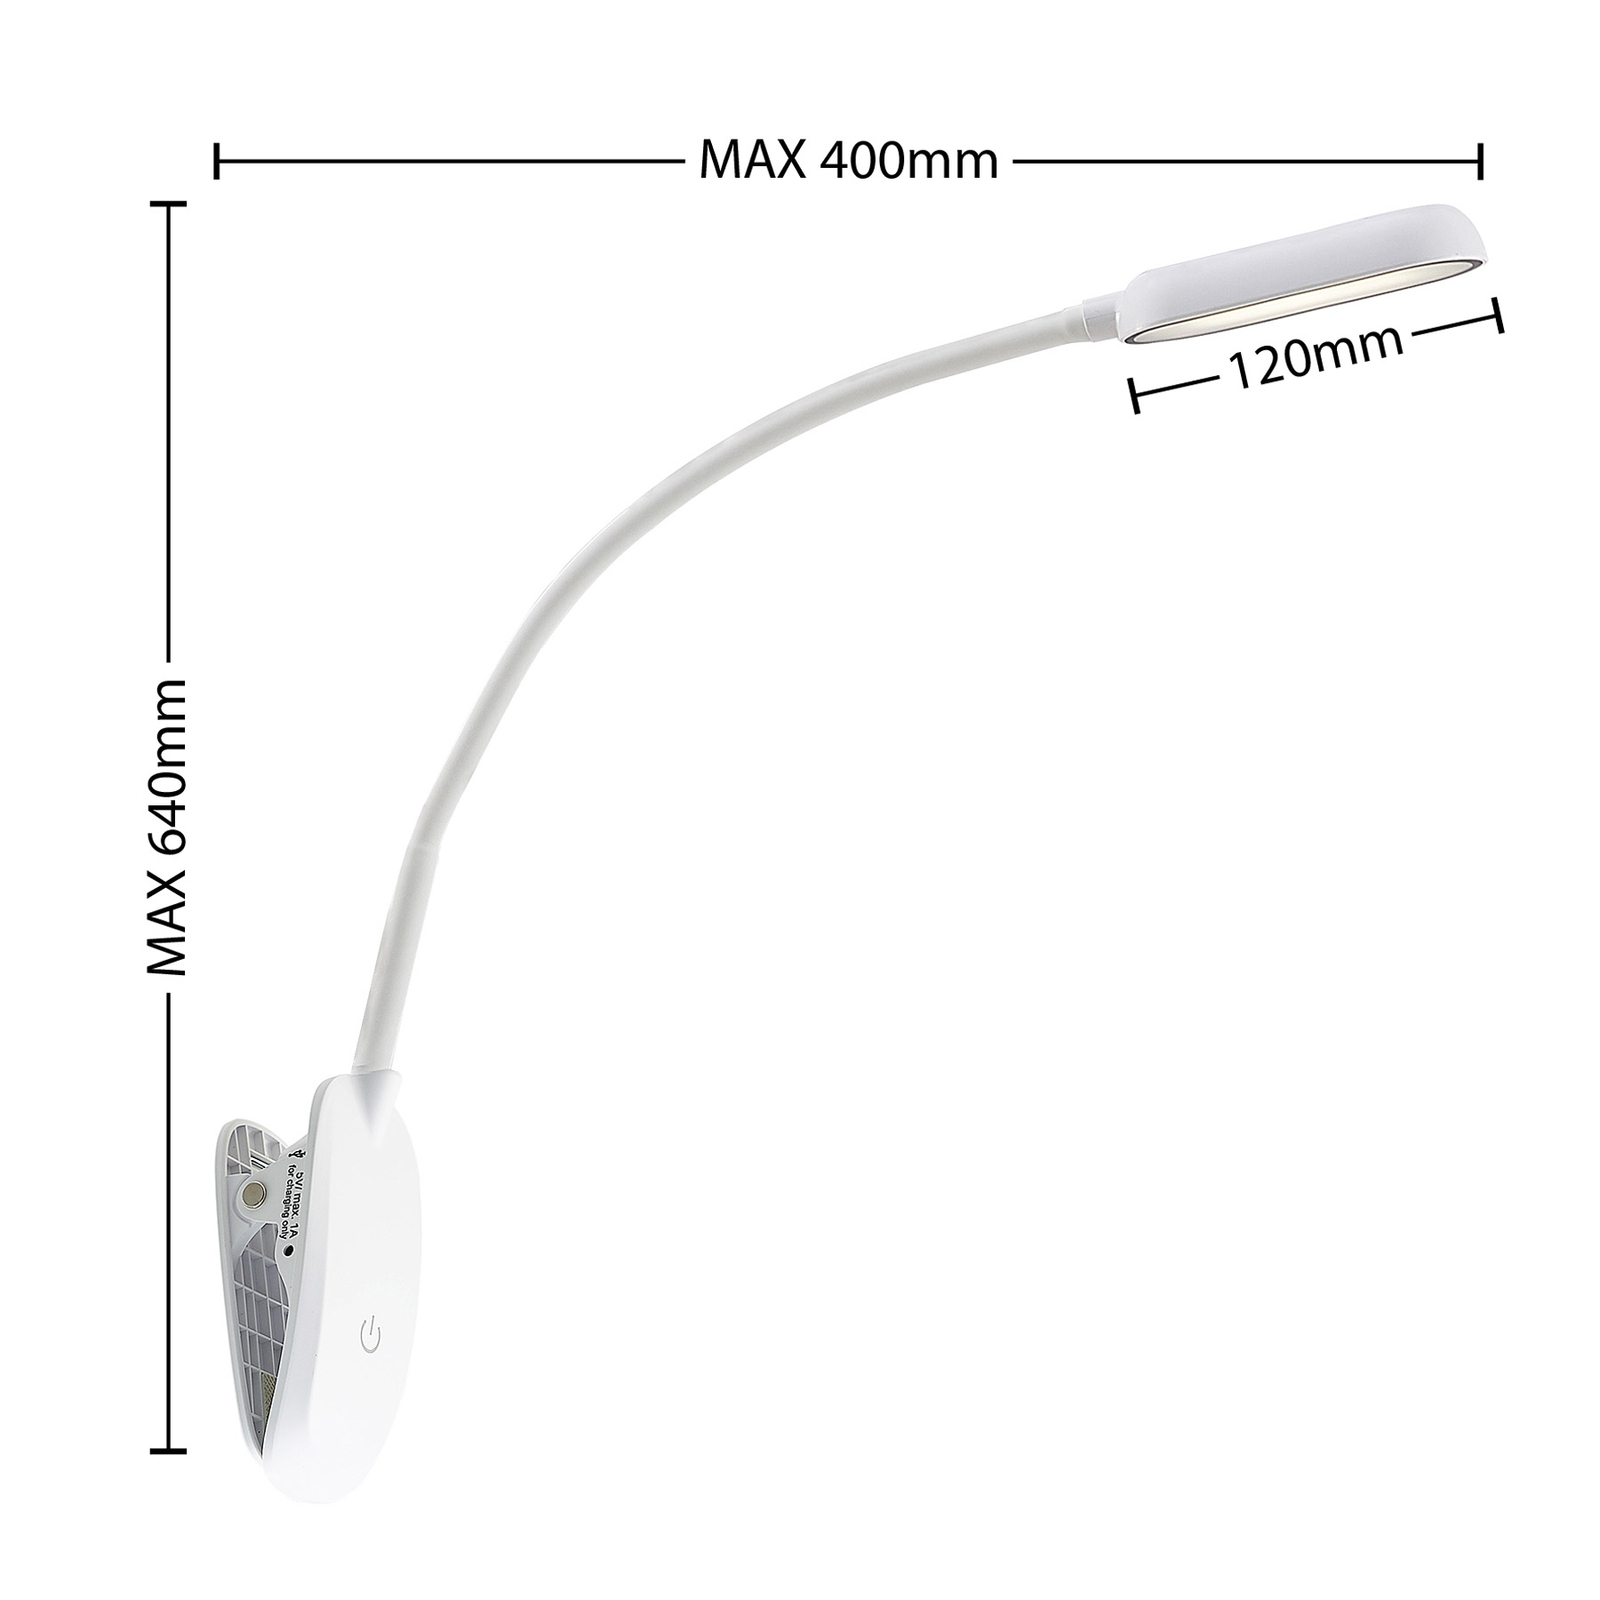 Prios klemlamp Najari, wit, oplaadbare batterij, USB, 51 cm hoog